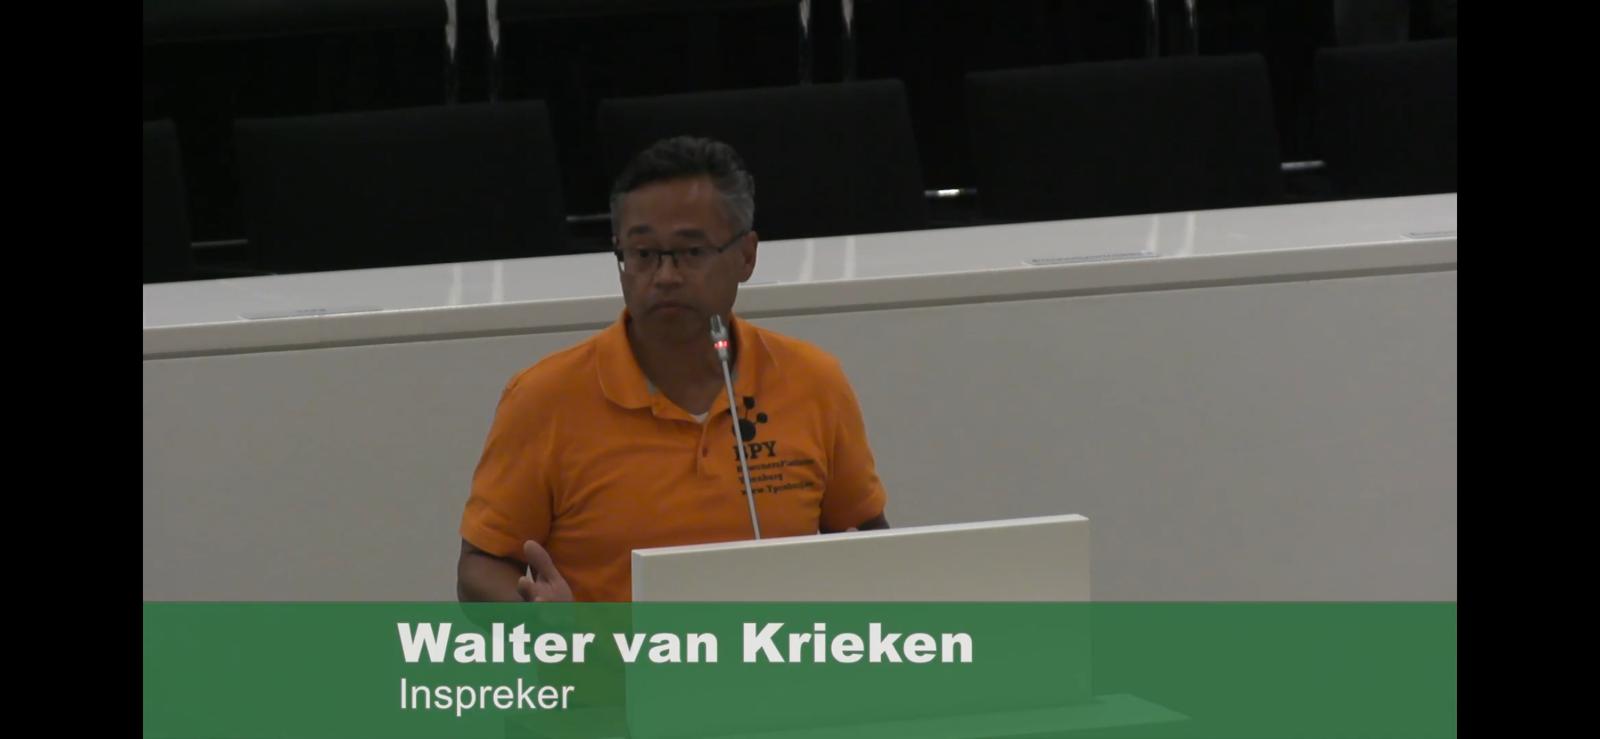 Walter van Krieken als inspreker bij de gemeenteraad